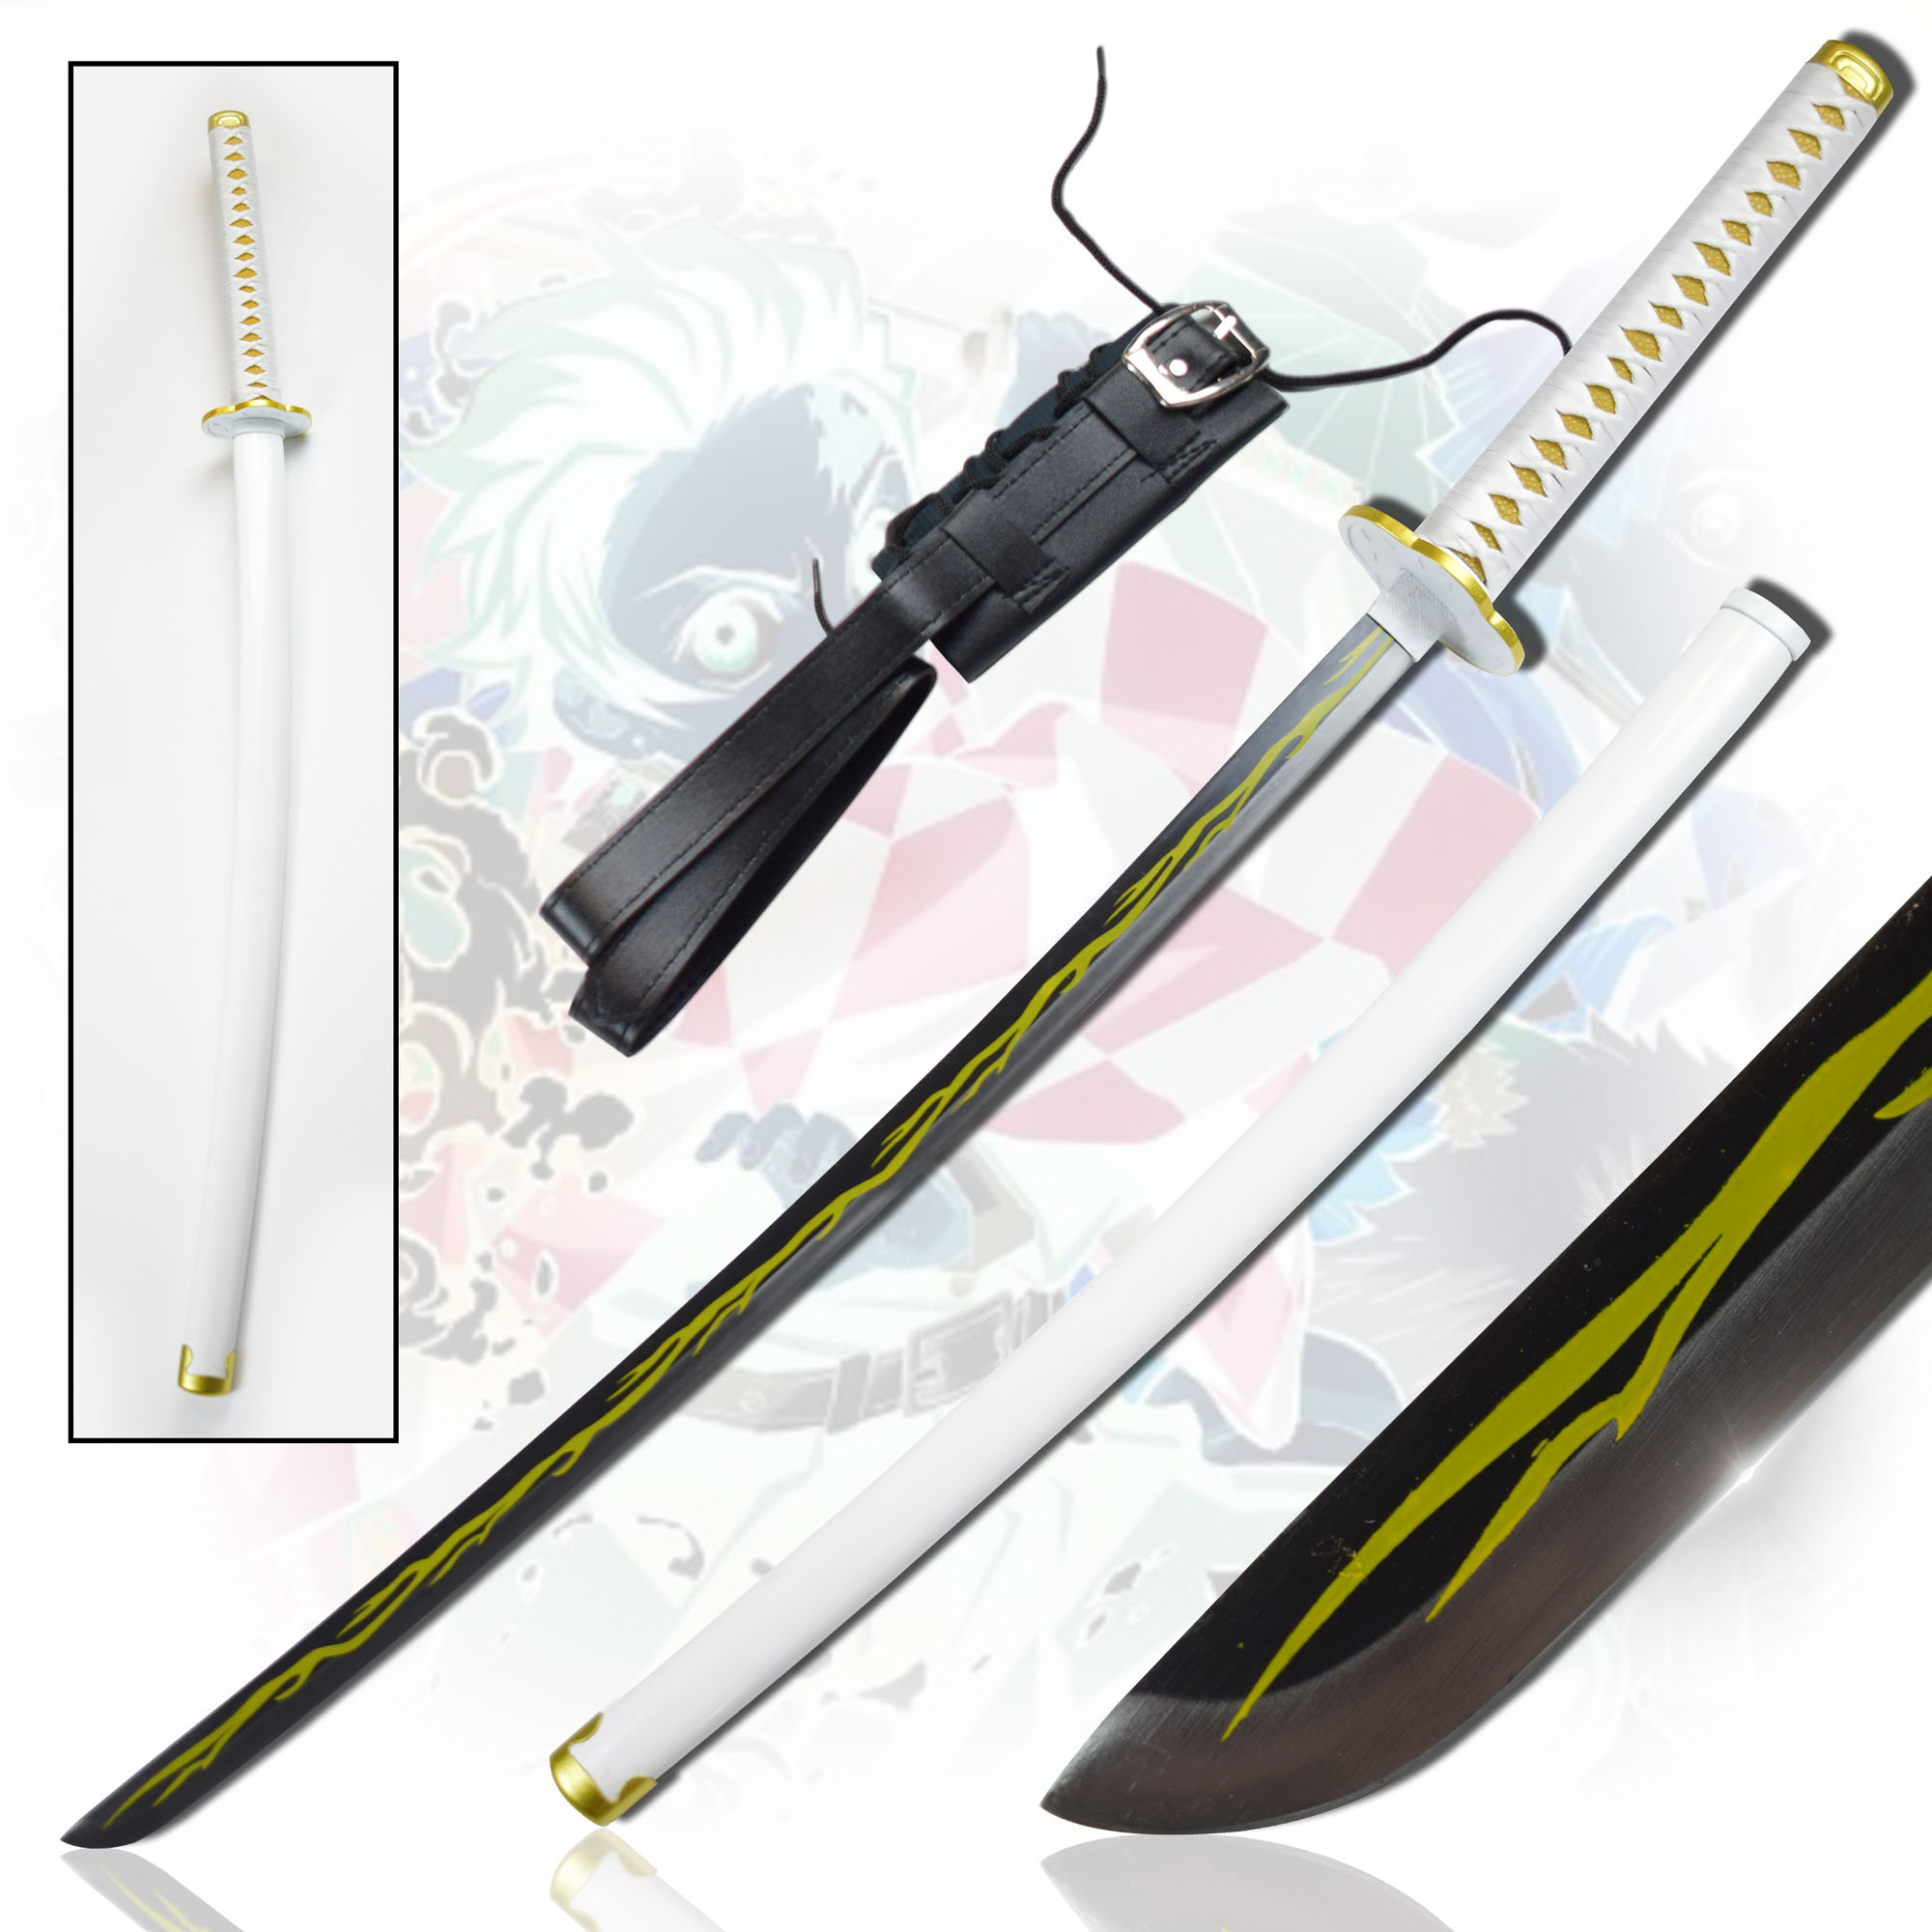 Demon Slayer: Kimetsu no Yaiba - Agatsuma Zenitsu's Sword 